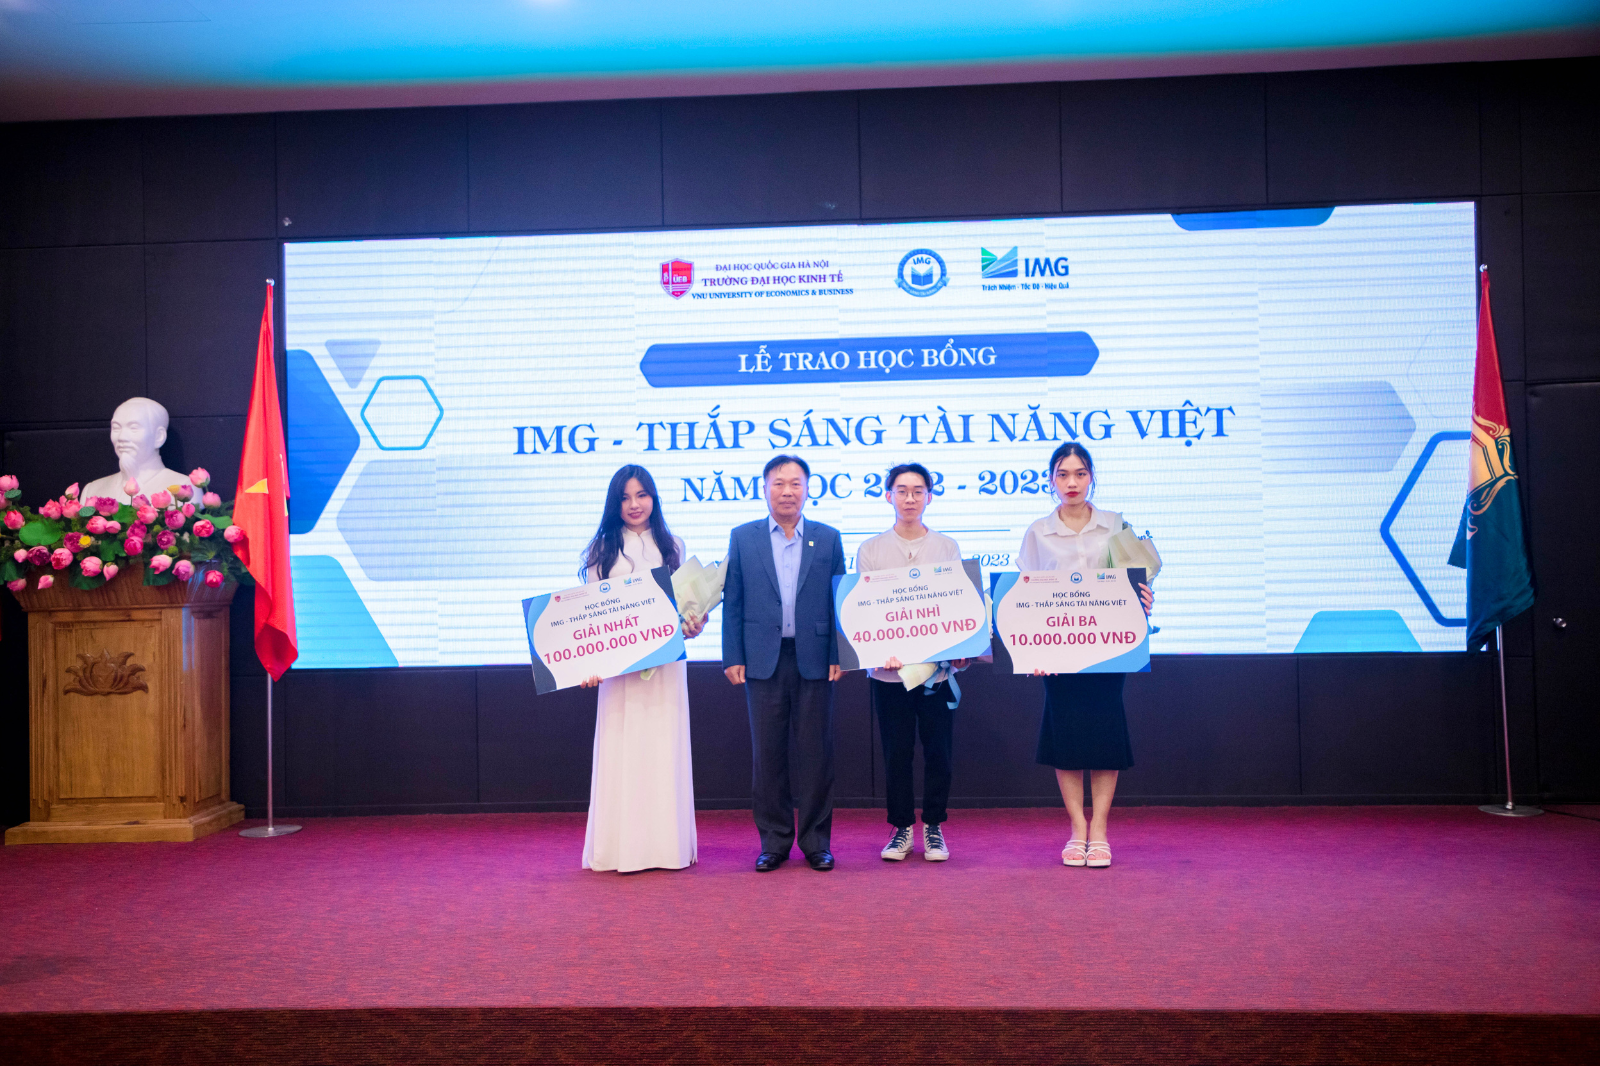 3 sinh viên UEB xuất sắc dành học bổng Thắp sáng tài năng Việt - IMG năm học 2022-2023